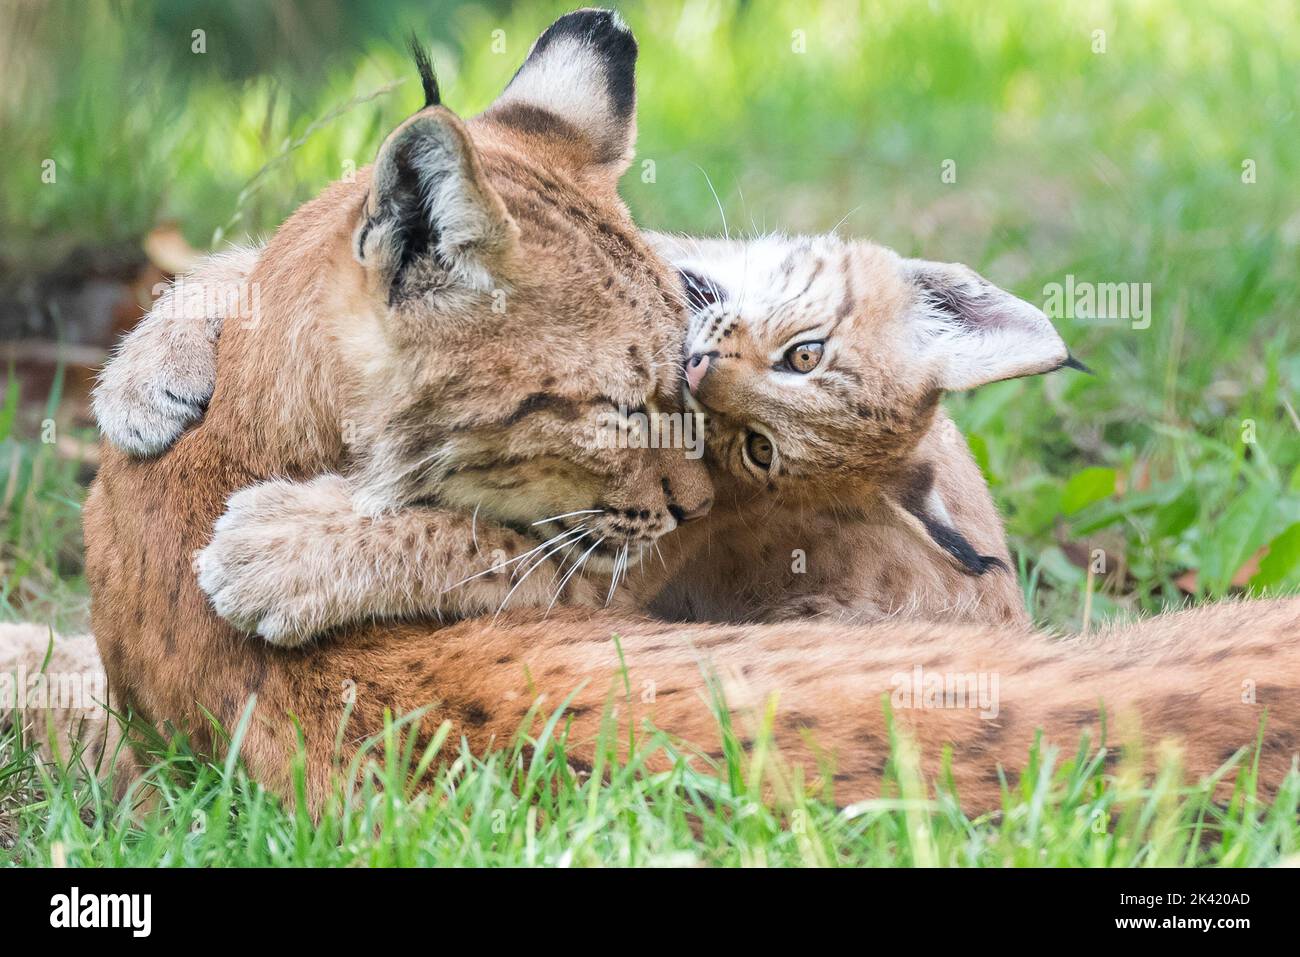 Lynx with kitten Stock Photo